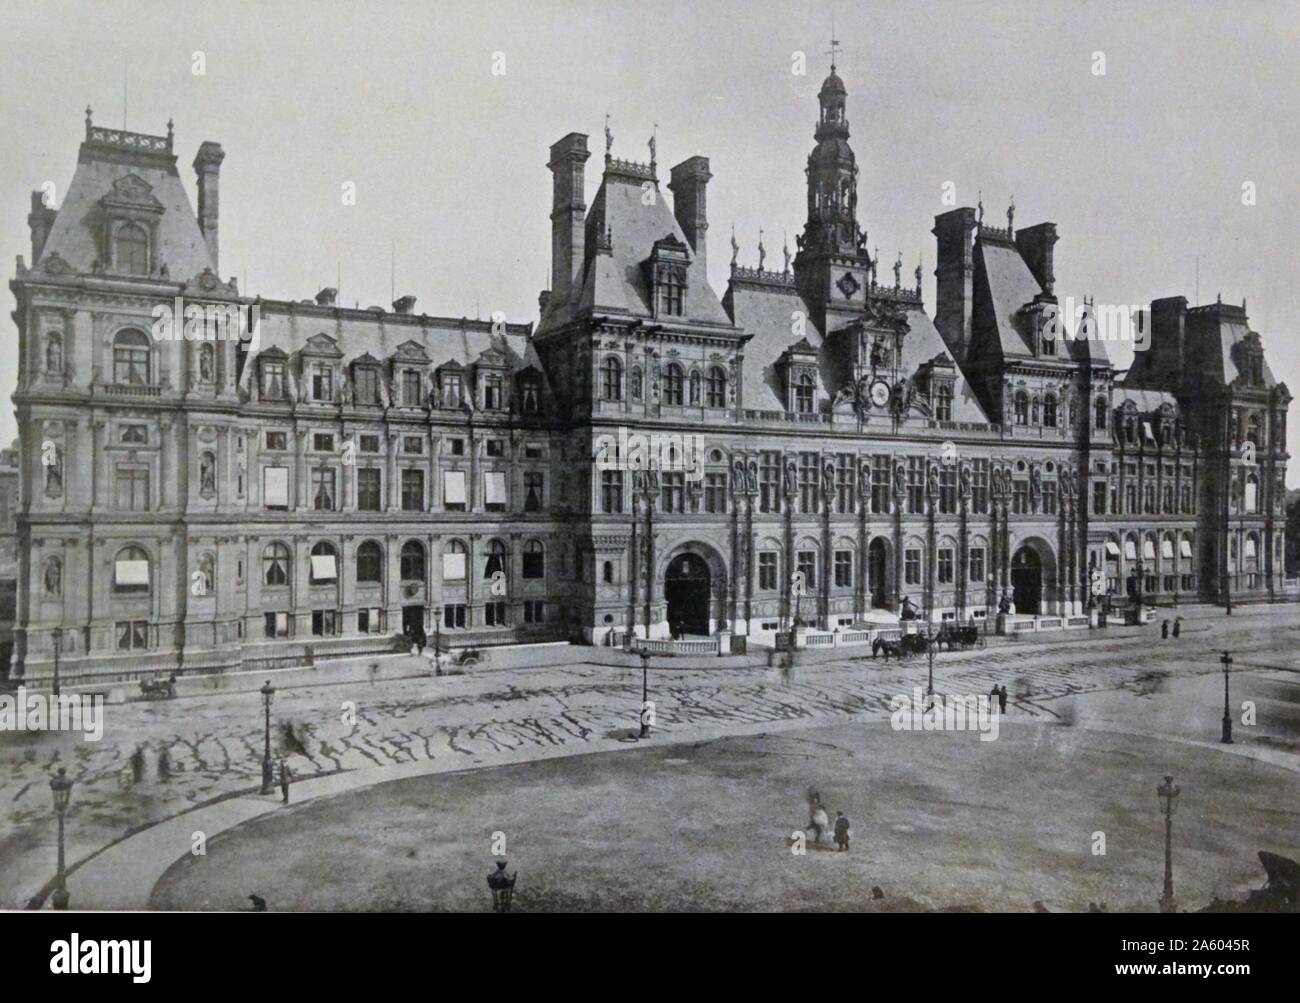 Stampa fotografica dell'esterno dell'Hôtel de Ville di Parigi, Francia. Datata del XIX secolo Foto Stock